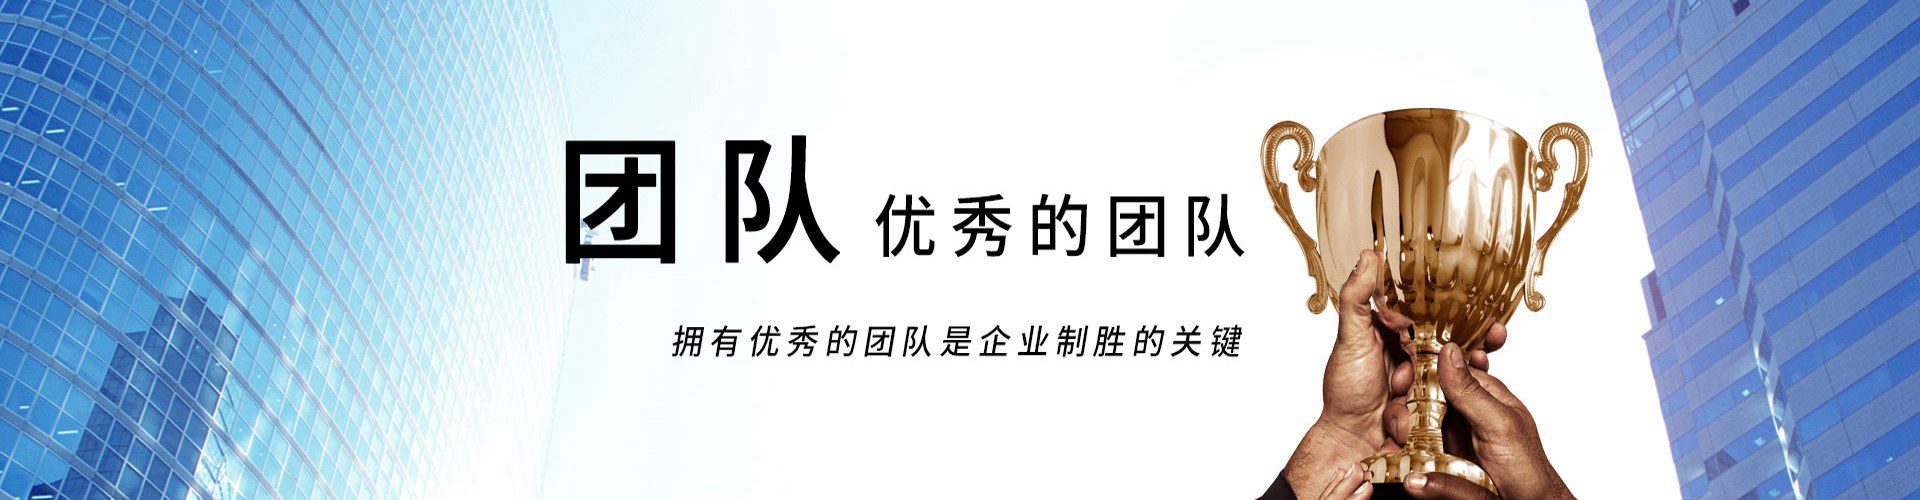 珠江电缆banner